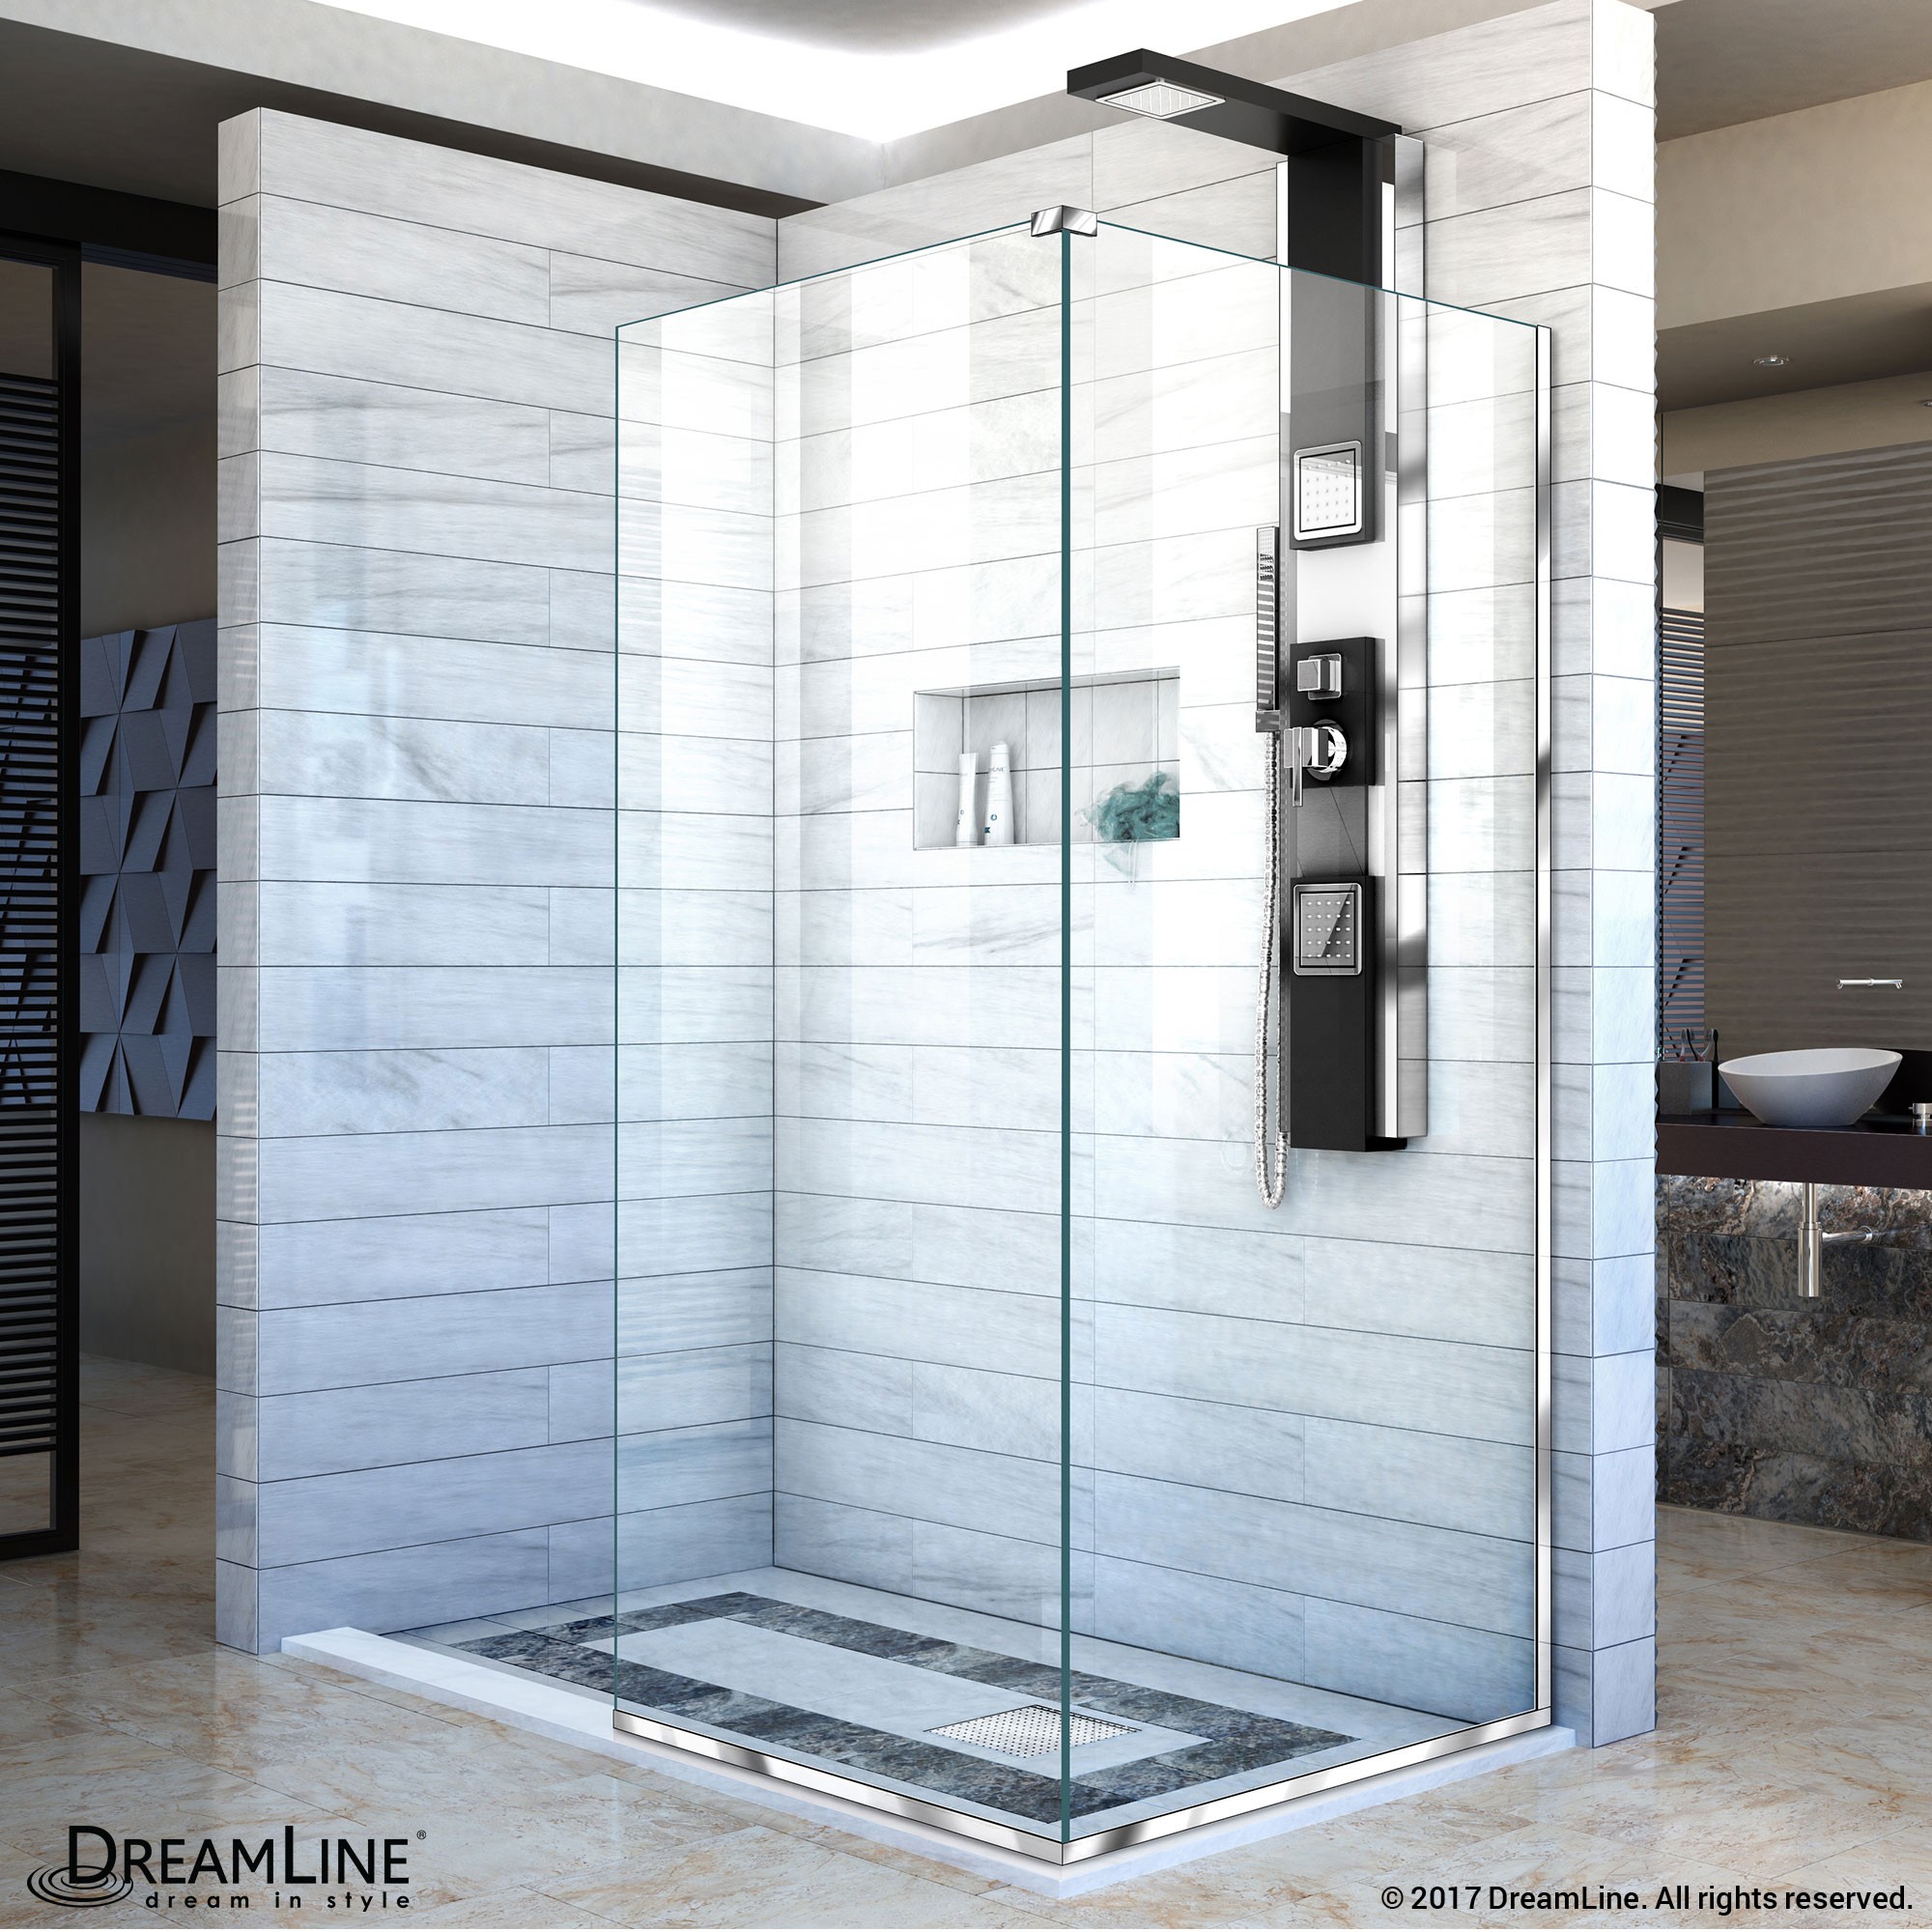 DreamLine Shower